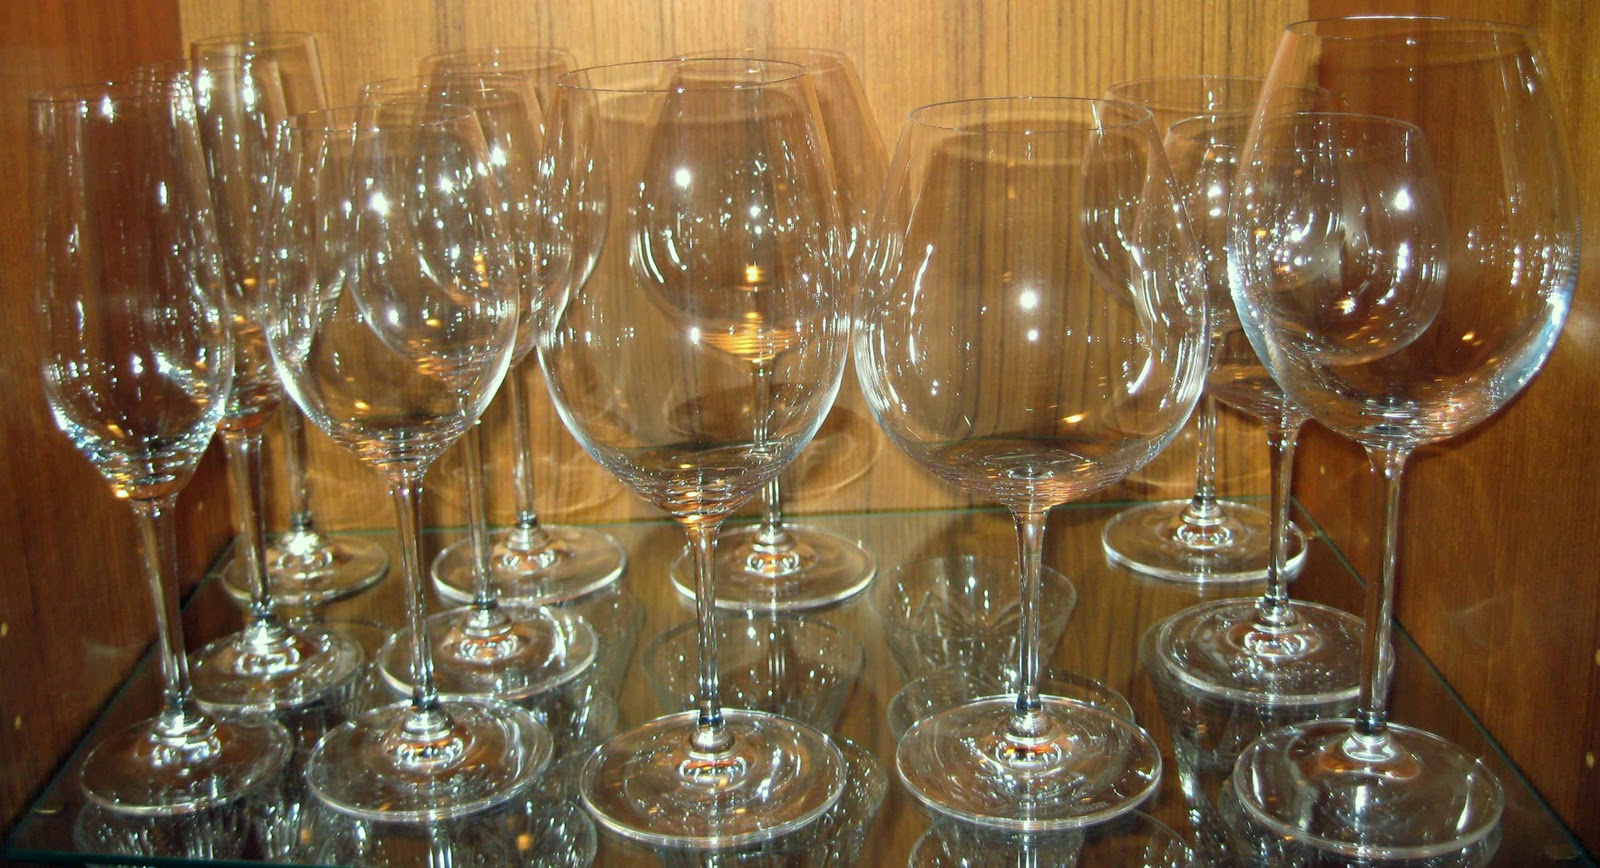 http://1.bp.blogspot.com/-bkTnvsX4hBQ/TrNyBlAAz5I/AAAAAAAAAV8/58kyCGlnM5c/s1600/Wine+Glasses.JPG